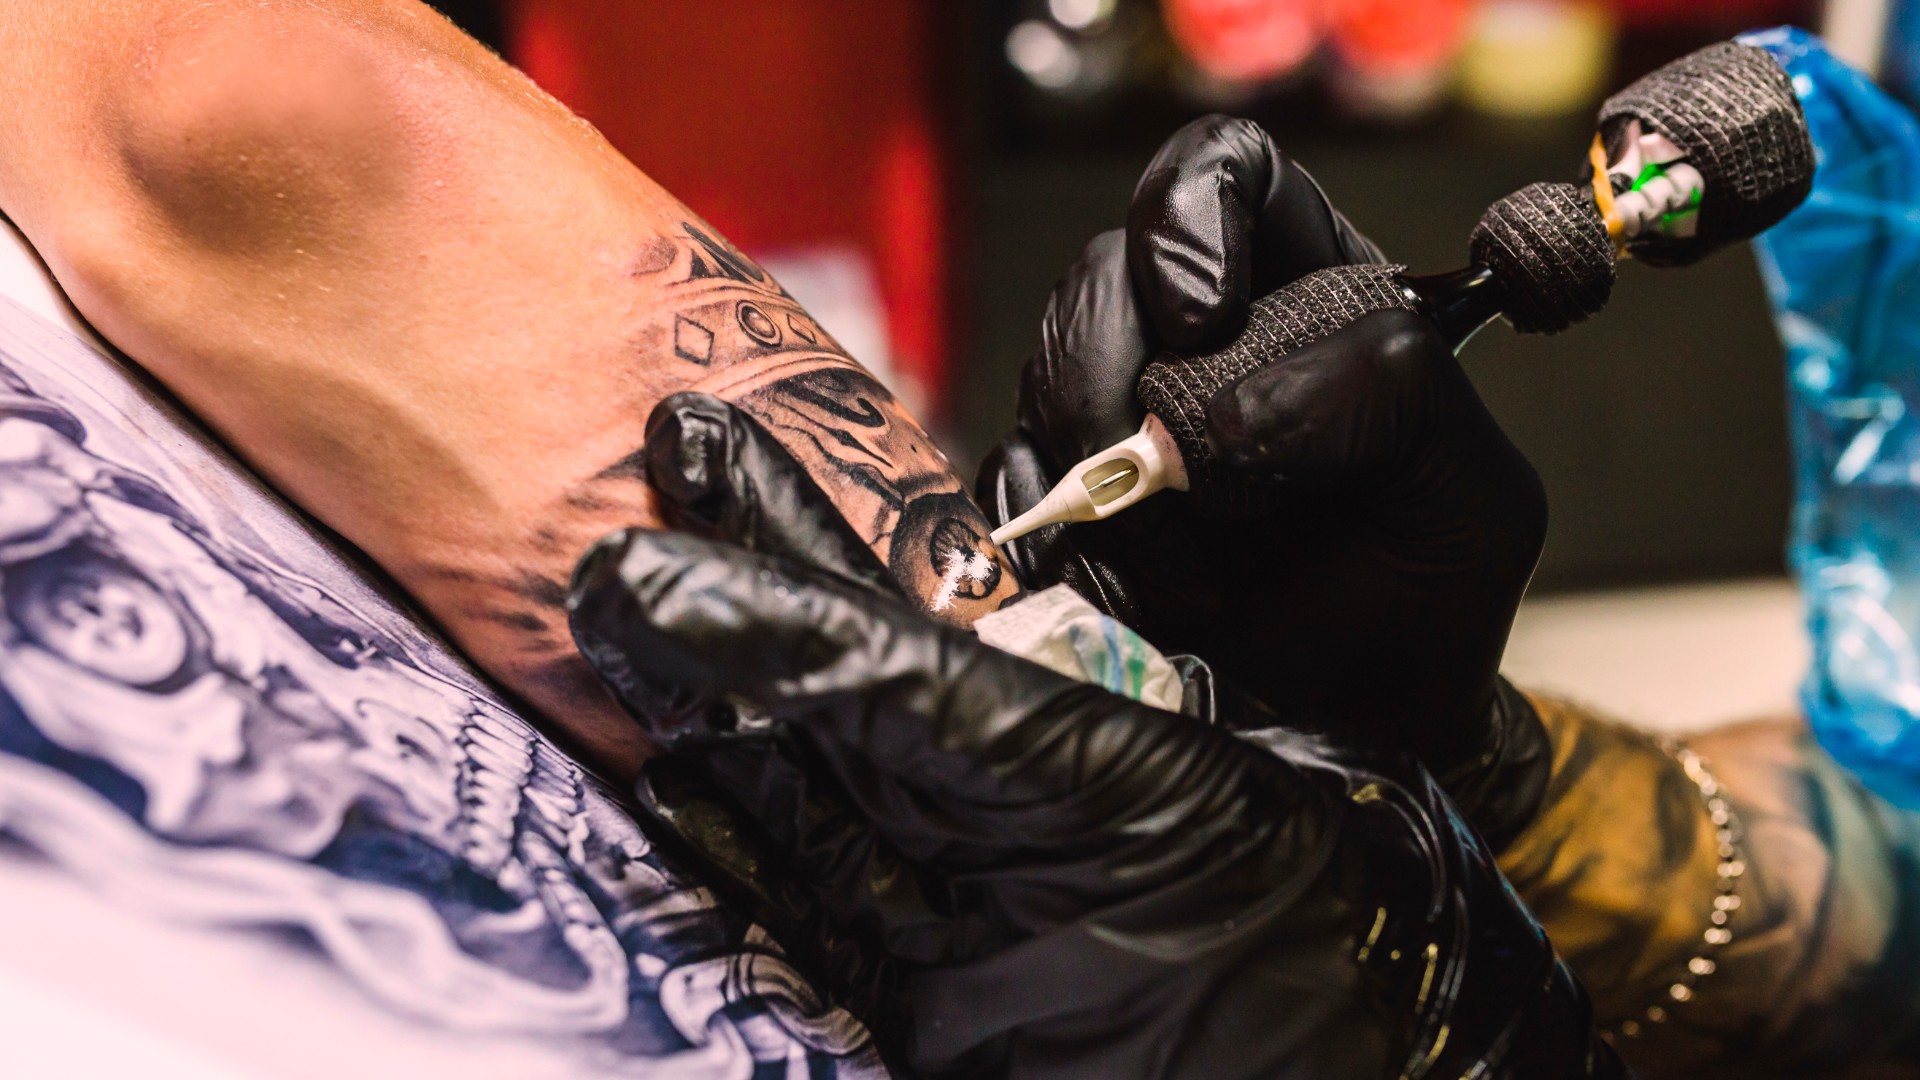 Foto de capa do artigo "Cuidados com a tatuagem: saiba o que fazer antes e depois"